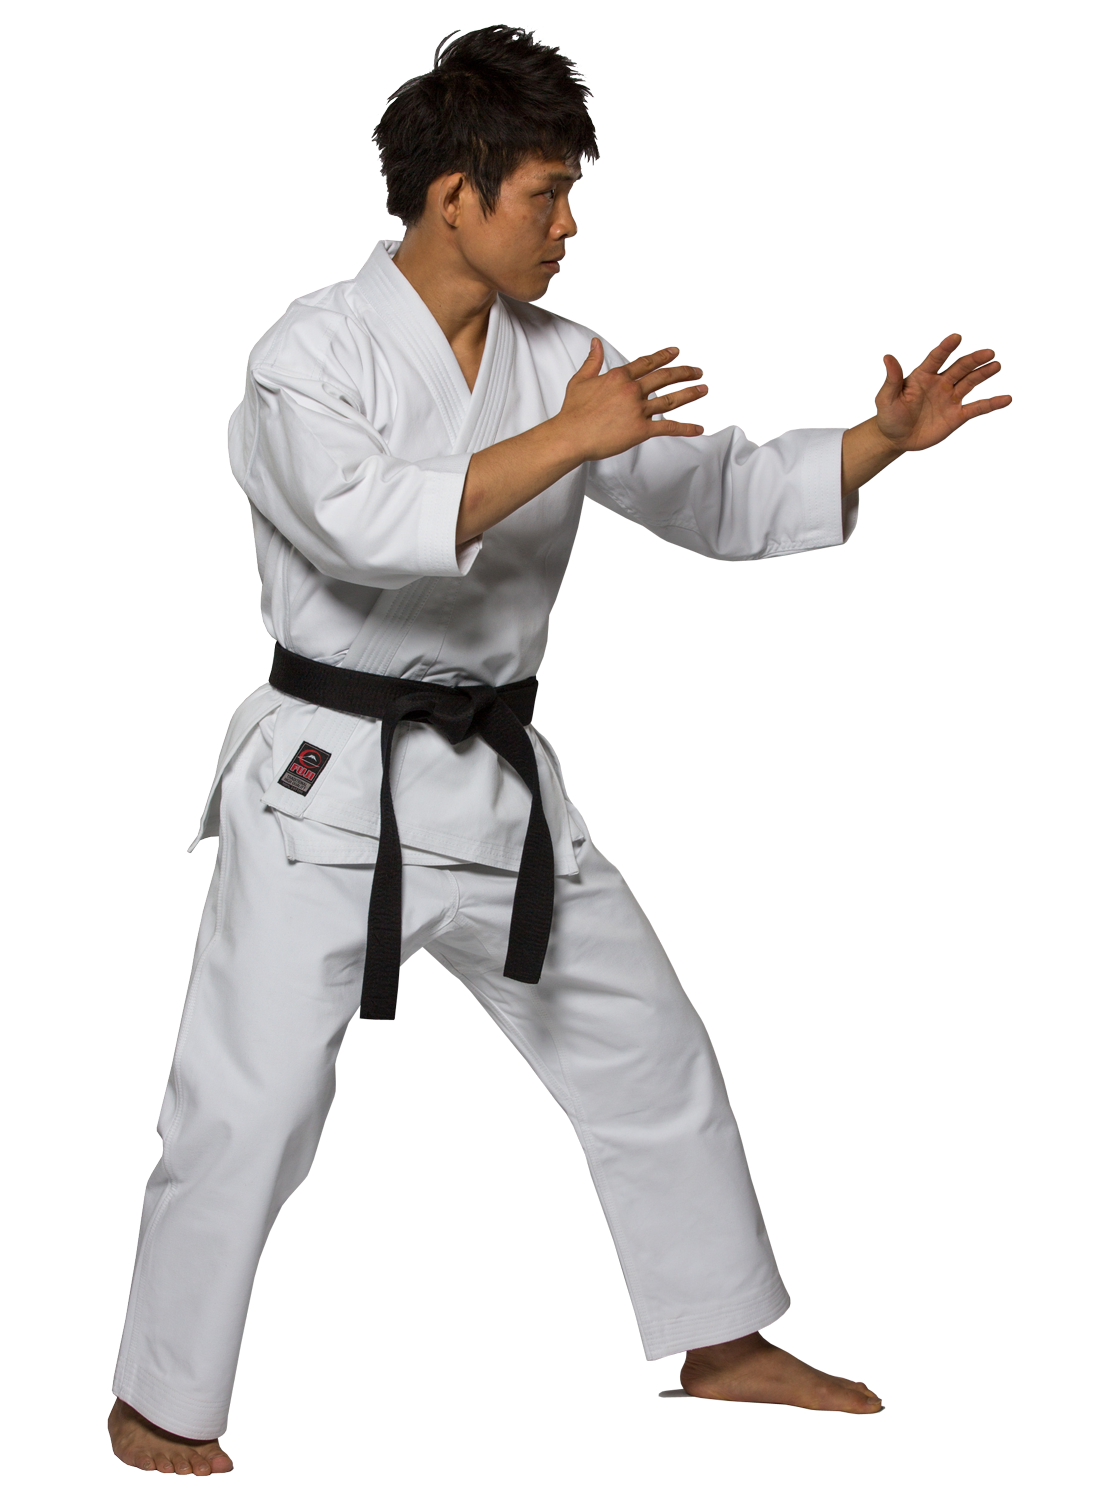 Black Belt Karate Male Fighter Transparent Background